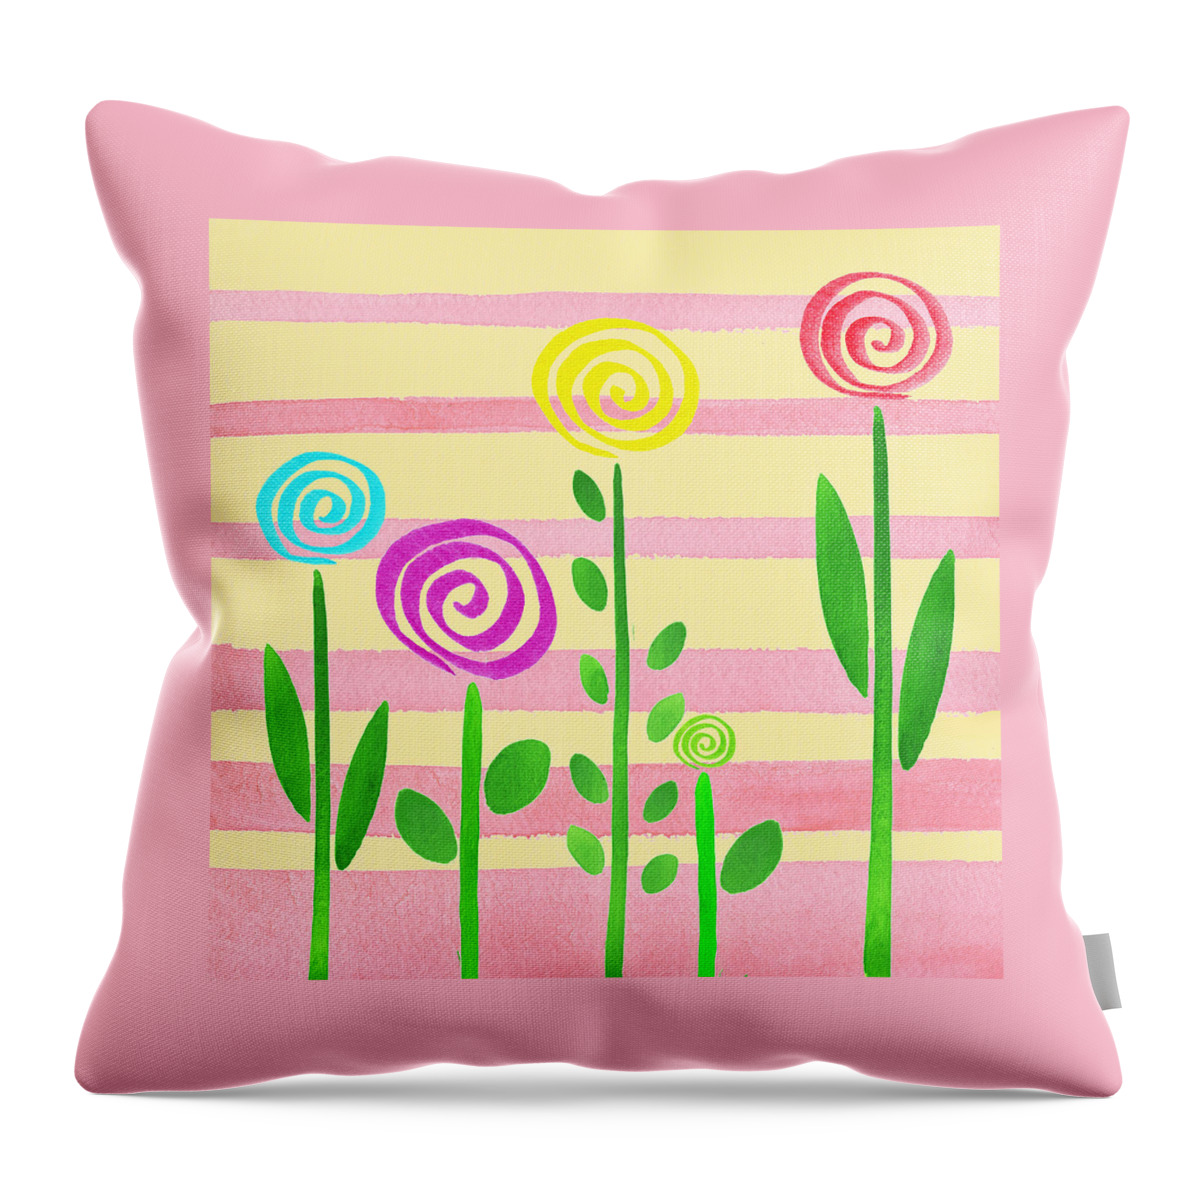 Lollipop Garden Throw Pillow featuring the painting Lollipop Garden by Irina Sztukowski